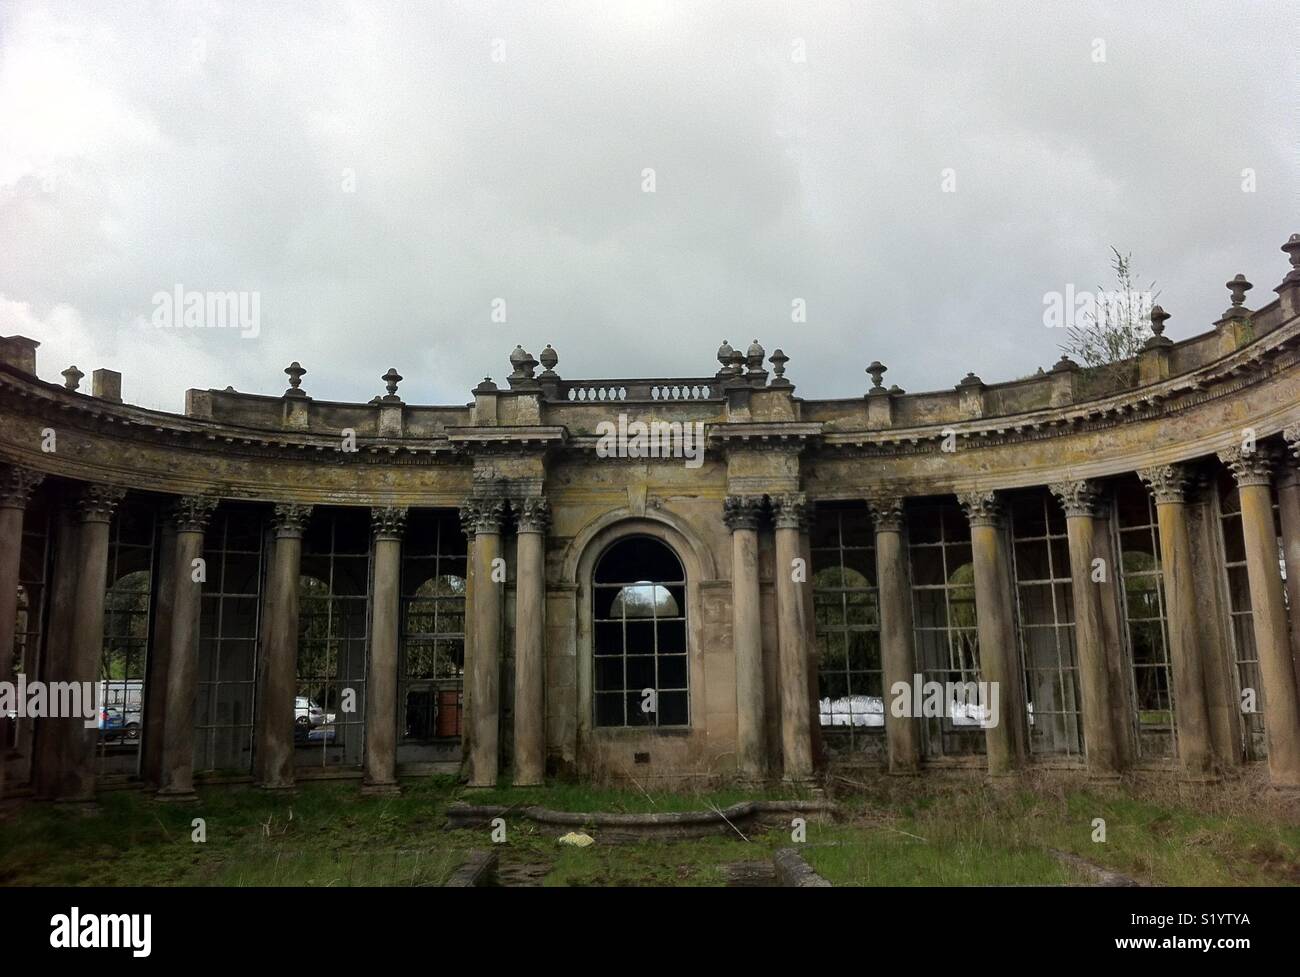 Une ruine romantique, la colonnade classique, Trentham Gardens, Staffordshire. Banque D'Images